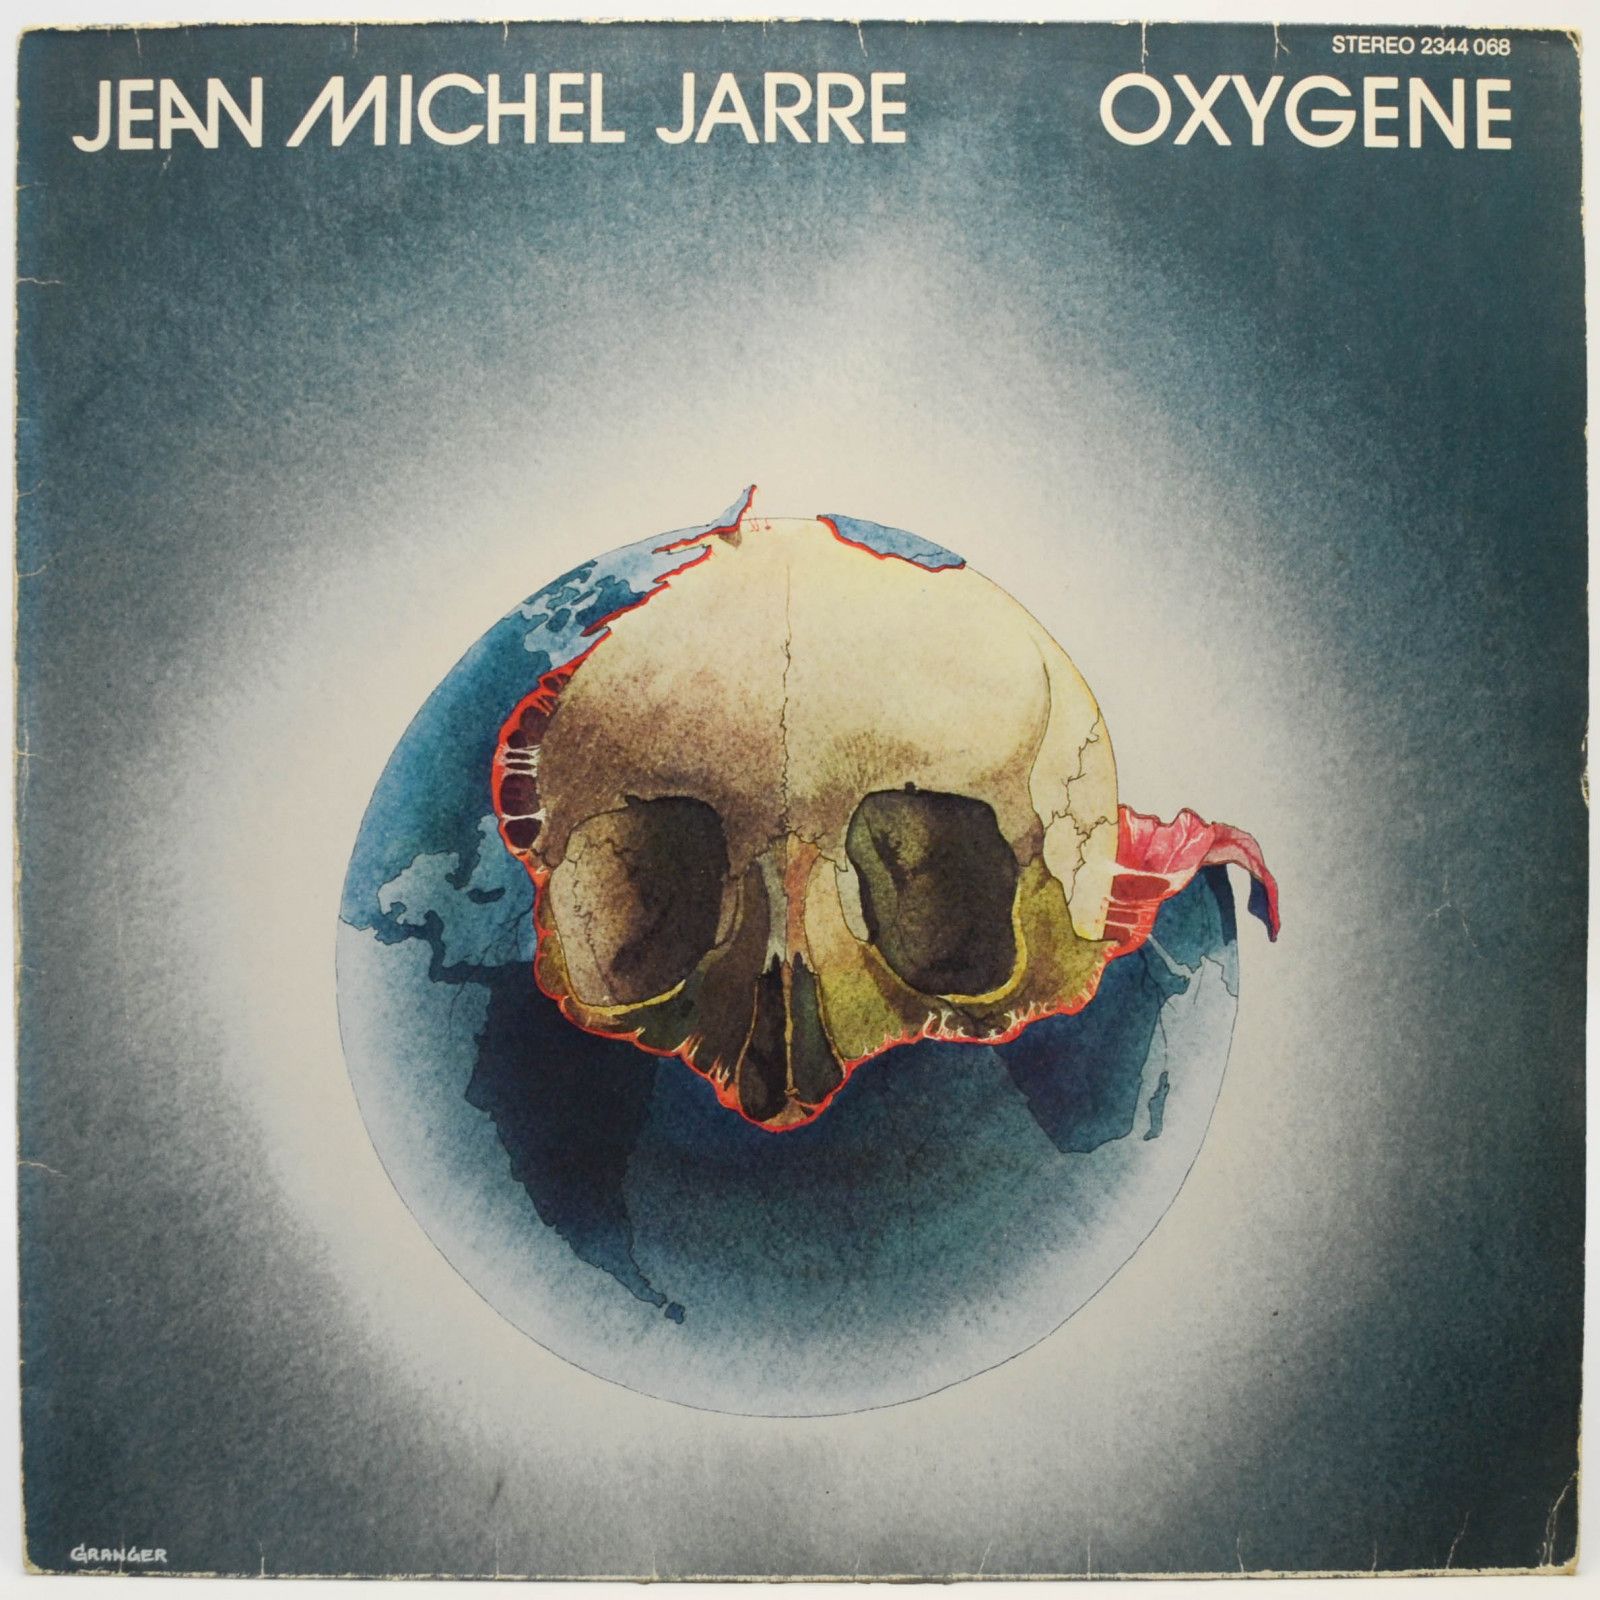 Jean Michel Jarre — Oxygene, 1977